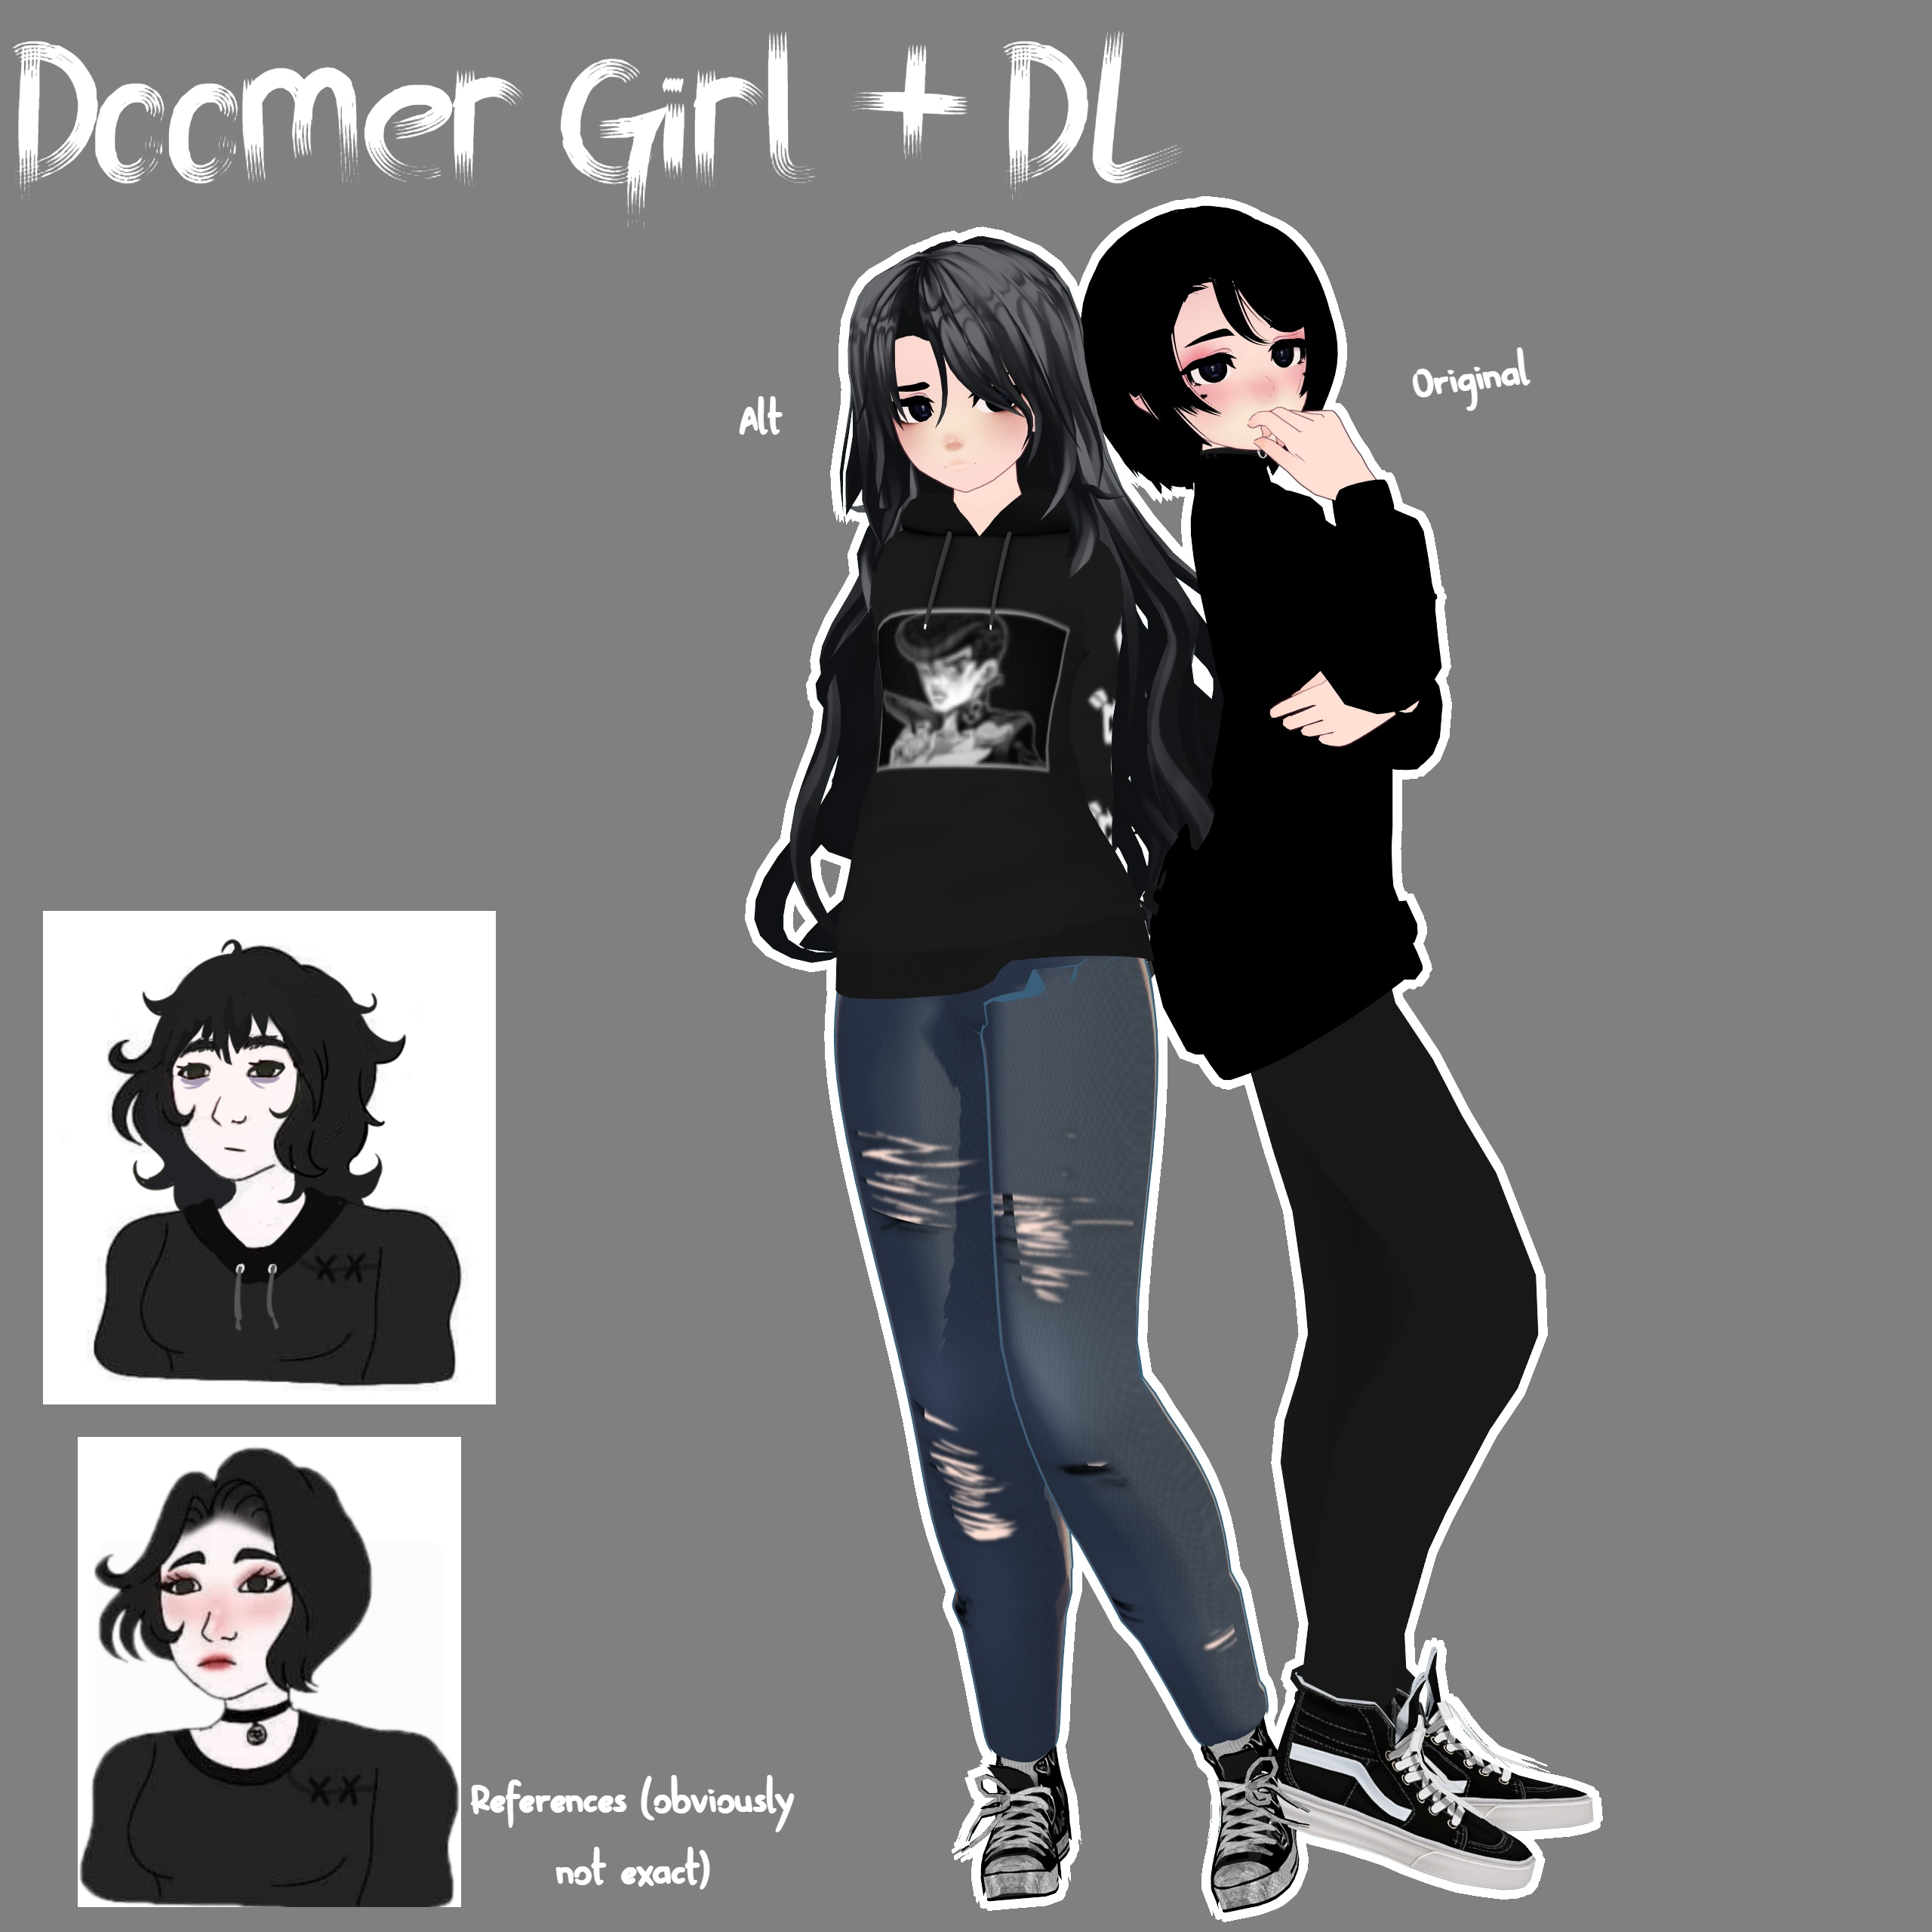 MMD x Wojak :. Doomer Girl + DL by BowlOfSpicyramen on DeviantArt